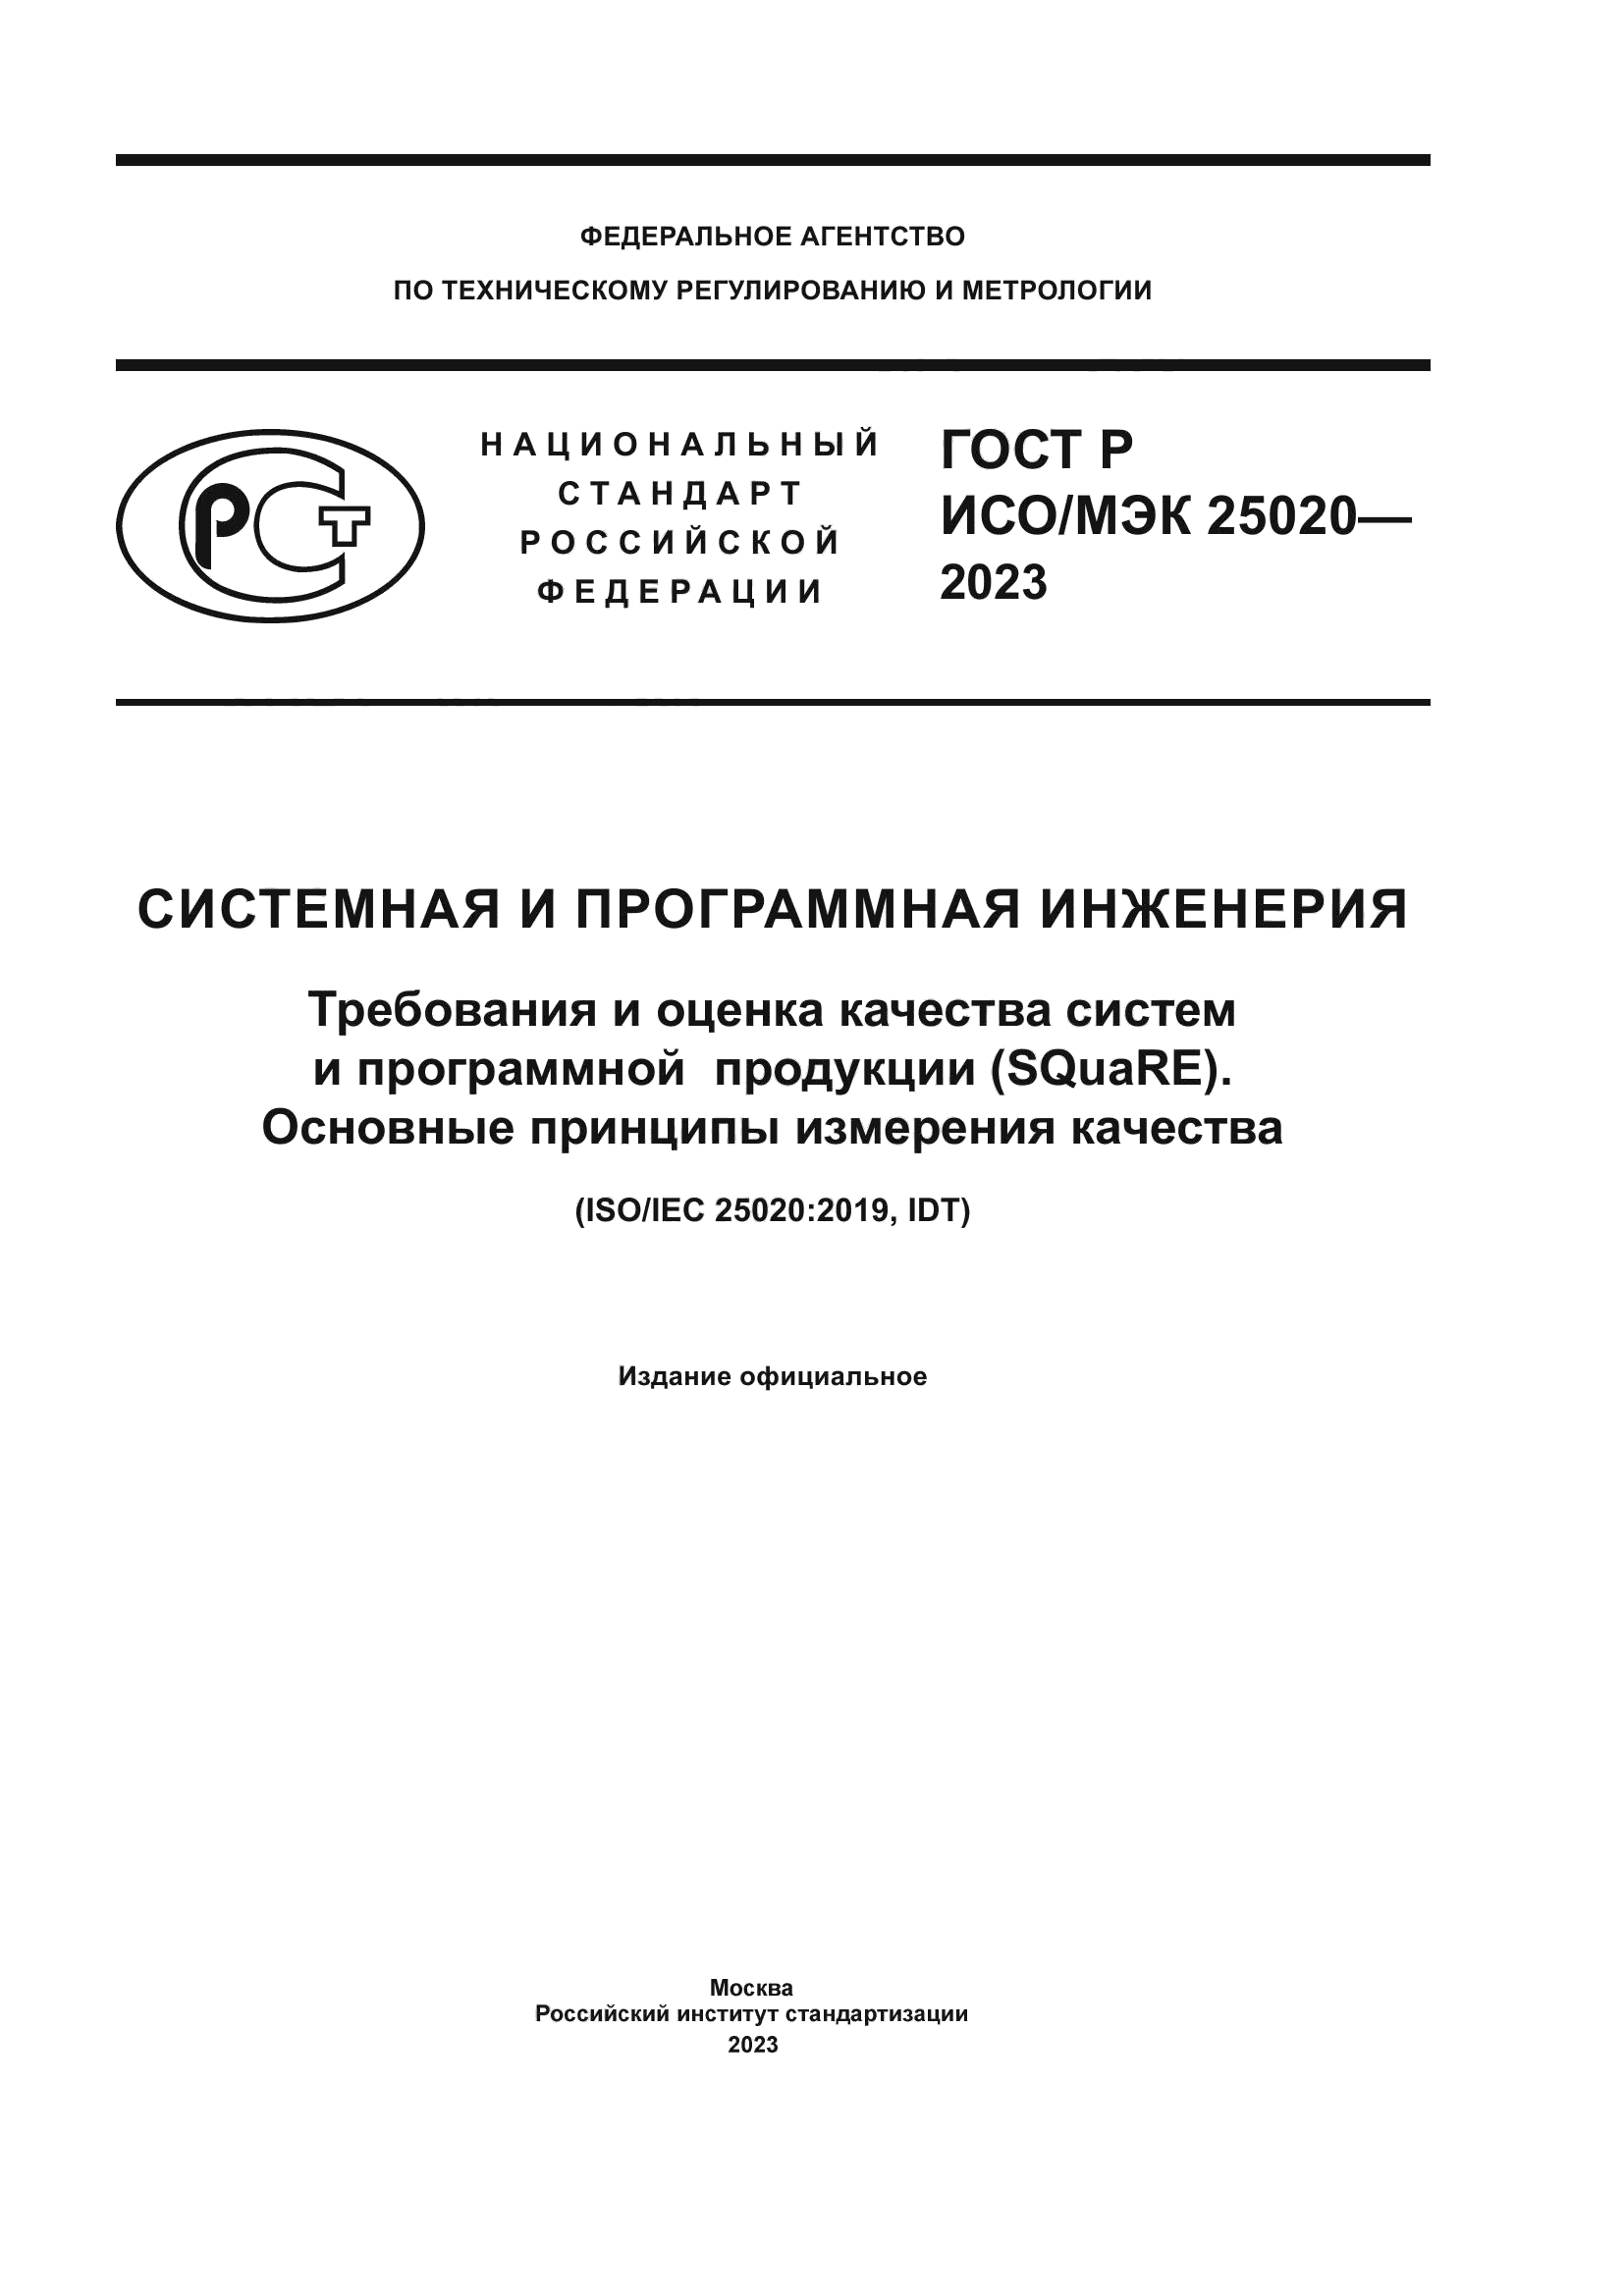 ГОСТ Р ИСО/МЭК 25020-2023